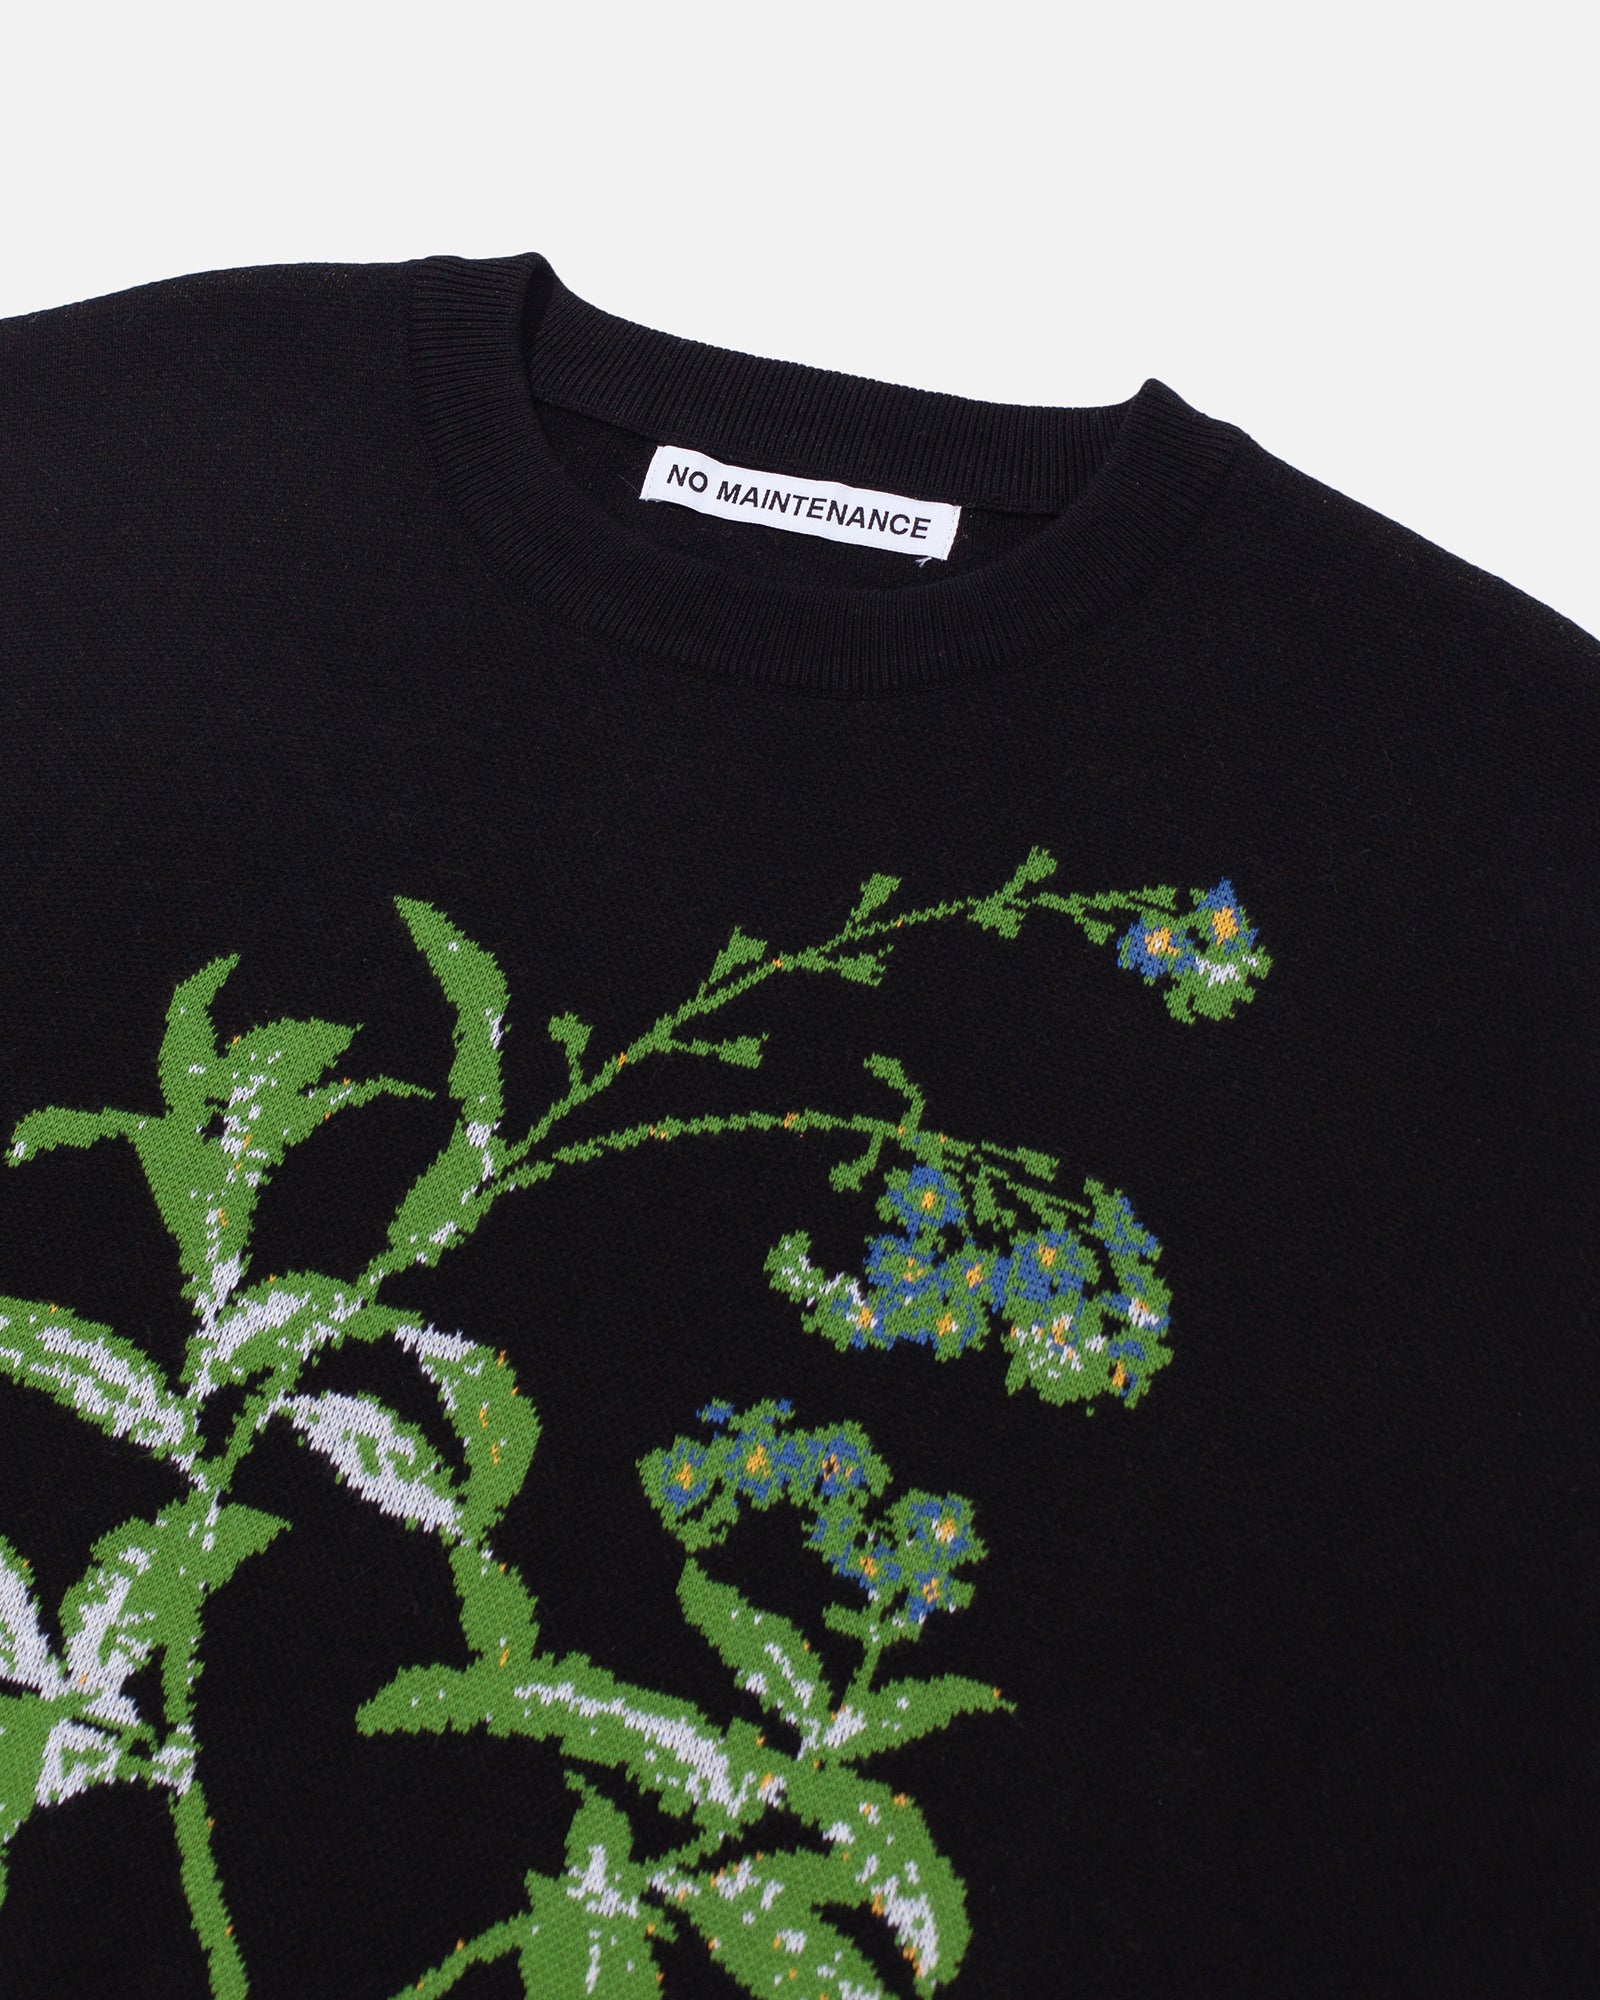 Schwarzer Pullover „Elle“ mit Blumen-Intarsienmuster